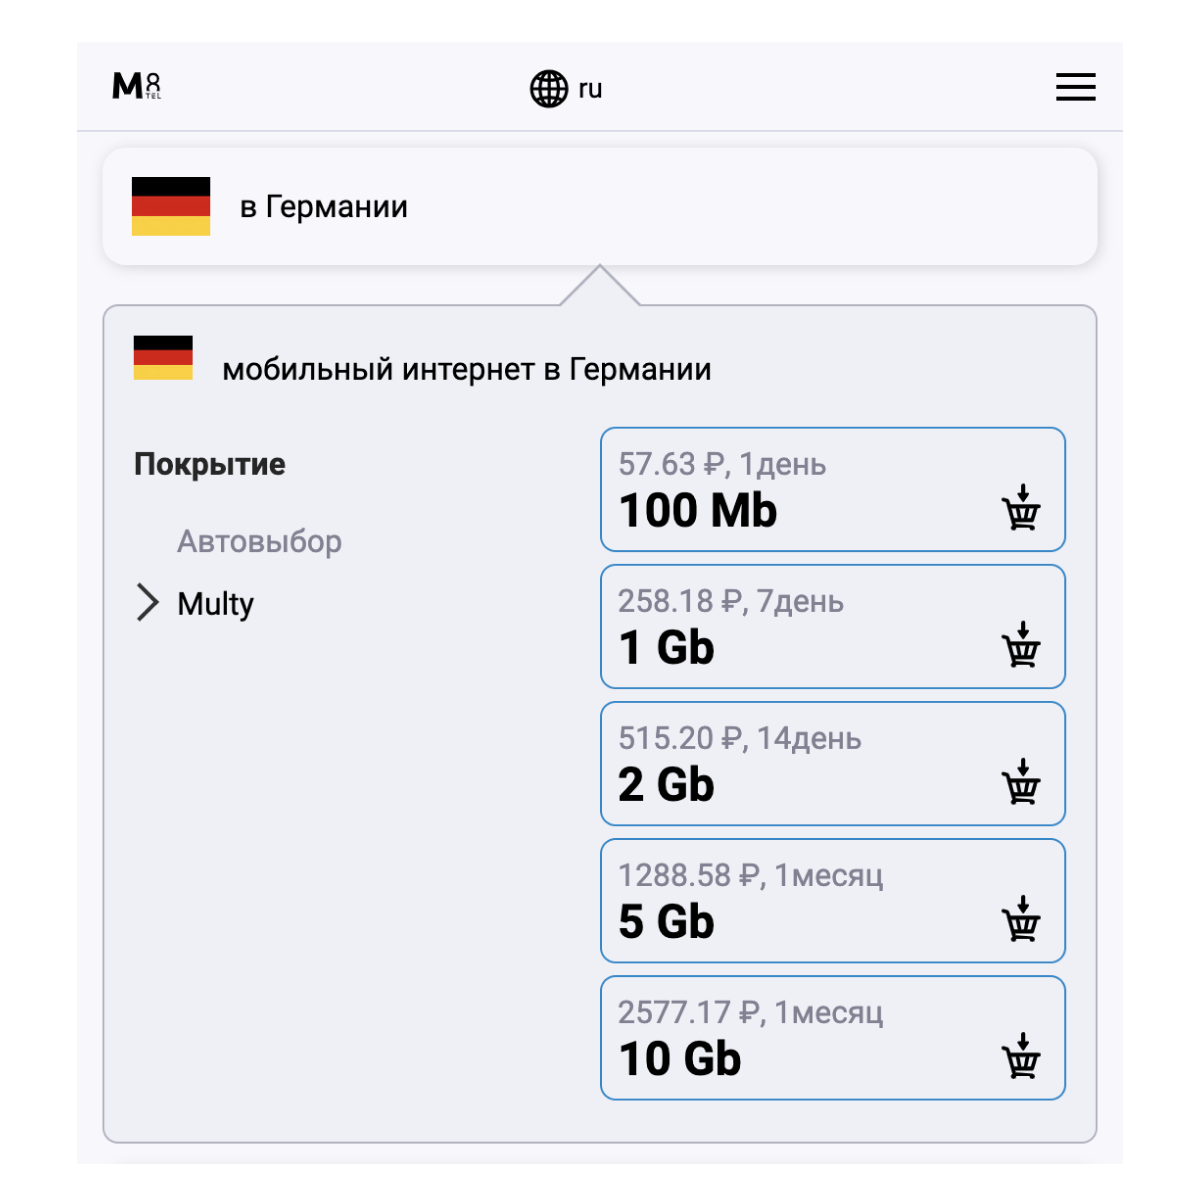 Туристическая электронная SIM-карта - eSIM для Германии от М8 (виртуальная)